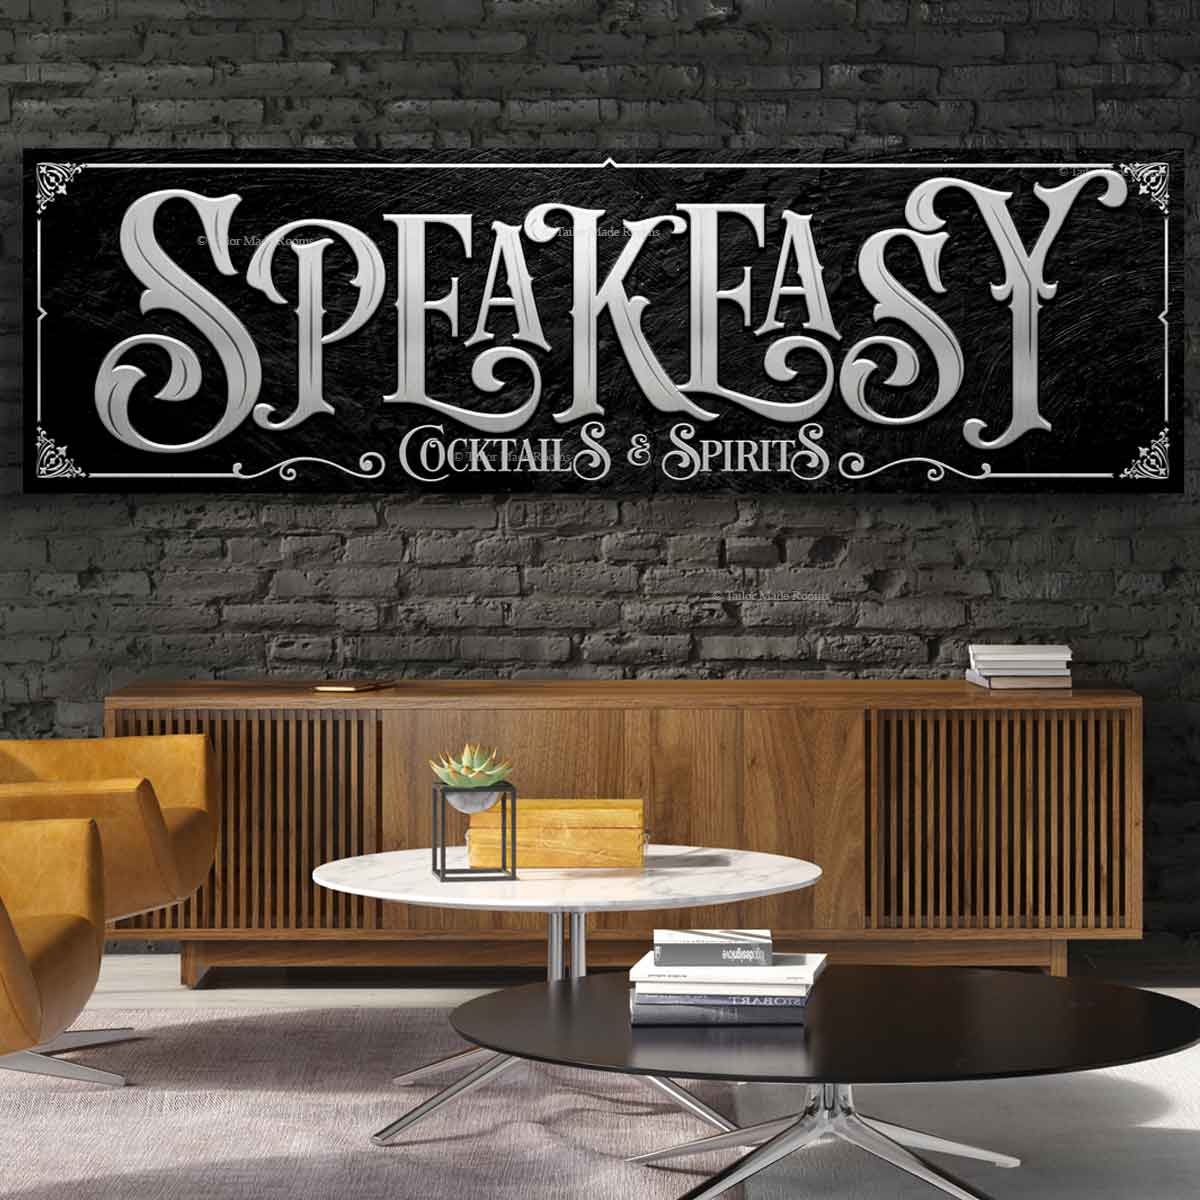 Speakeasy Bar  Speakeasy bar, Speakeasy decor, Lounge design